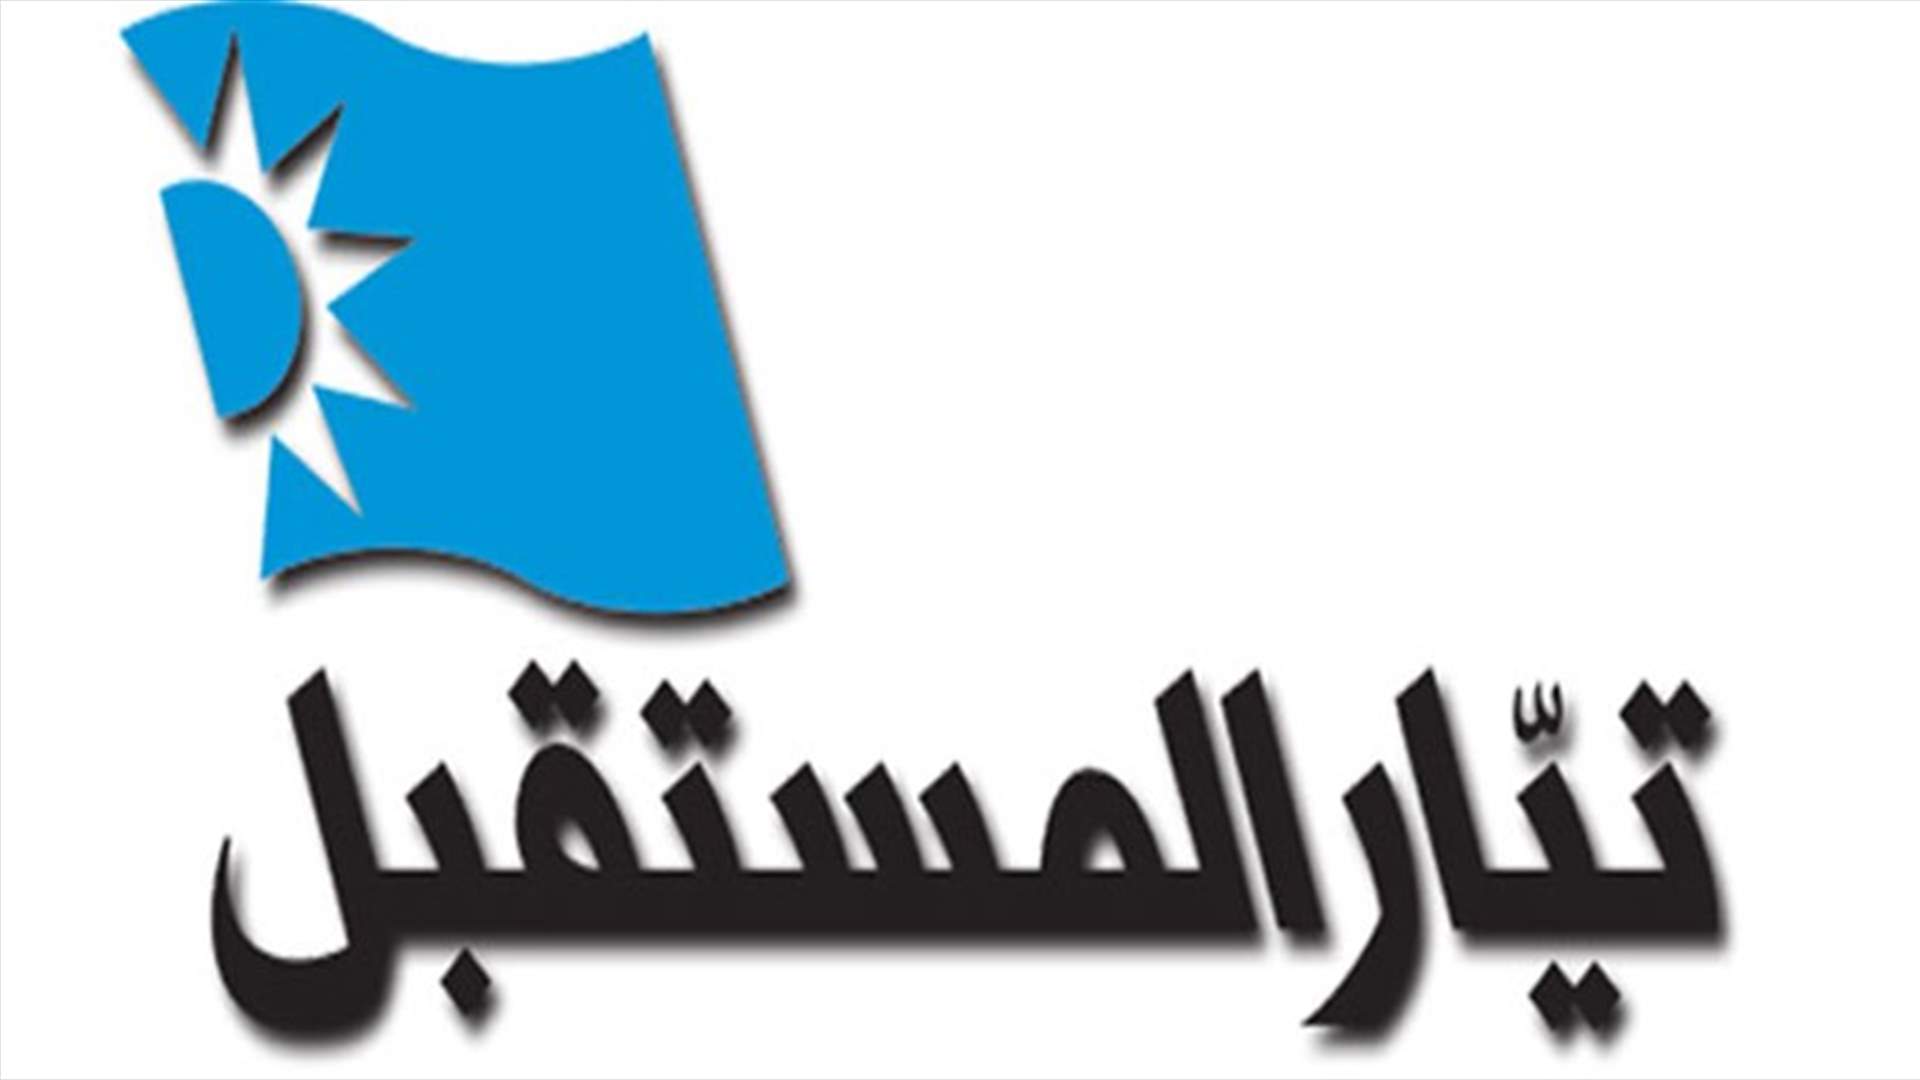 المستقبل: ندعو المجلس البلدي في طرابلس الى الانصراف فوراً للعمل 